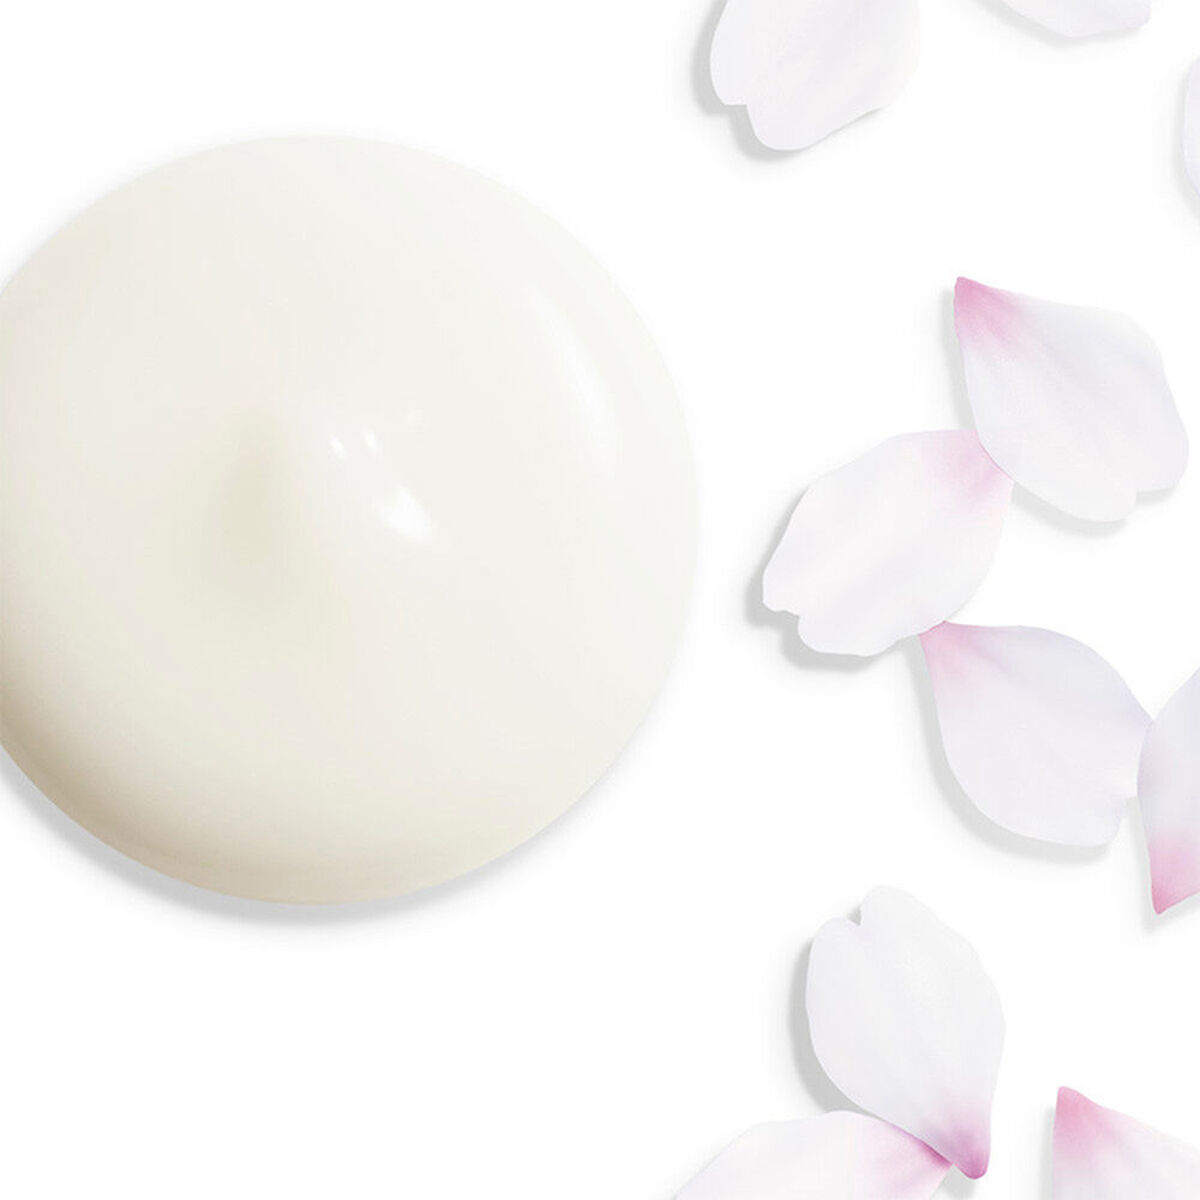 Ορός Λάμψη Shiseido White Lucent 50 ml